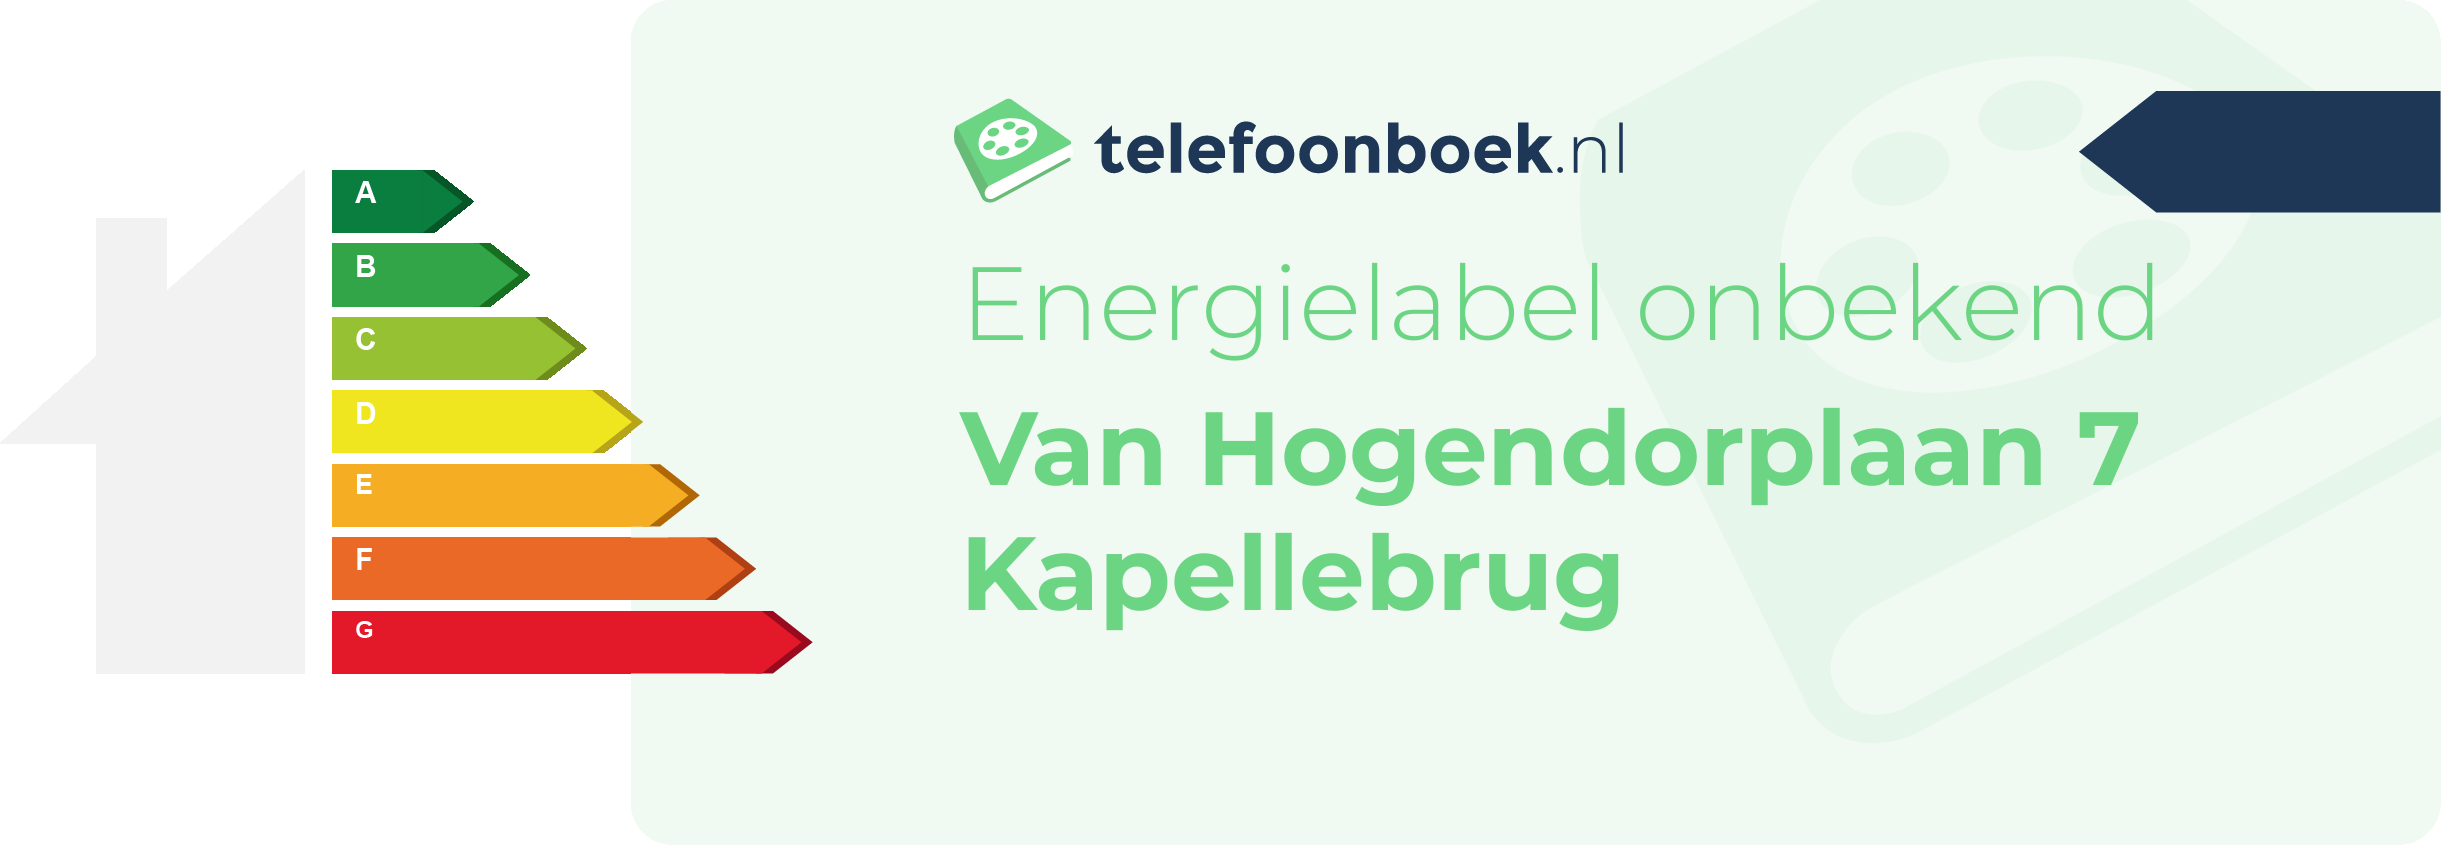 Energielabel Van Hogendorplaan 7 Kapellebrug